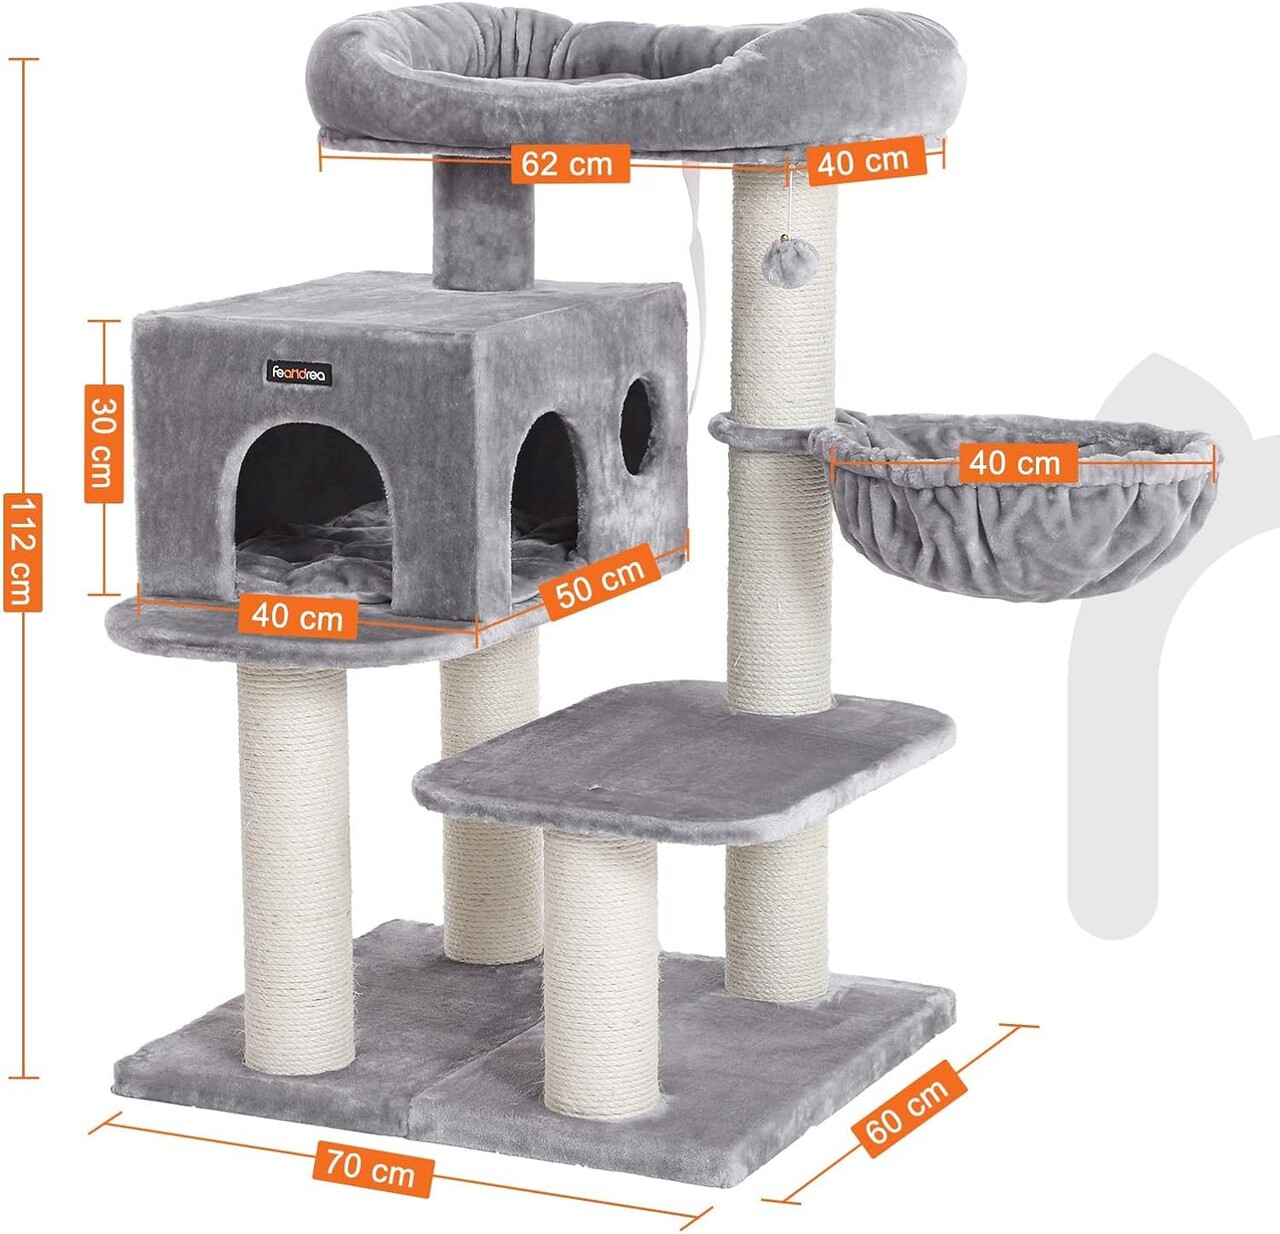 Ansamblu de joaca pisici cu elemente reglabile / arbore pentru pisici cu perna XXL, Feandrea, 70x60x112 cm, PAL/plus/sisal, gri